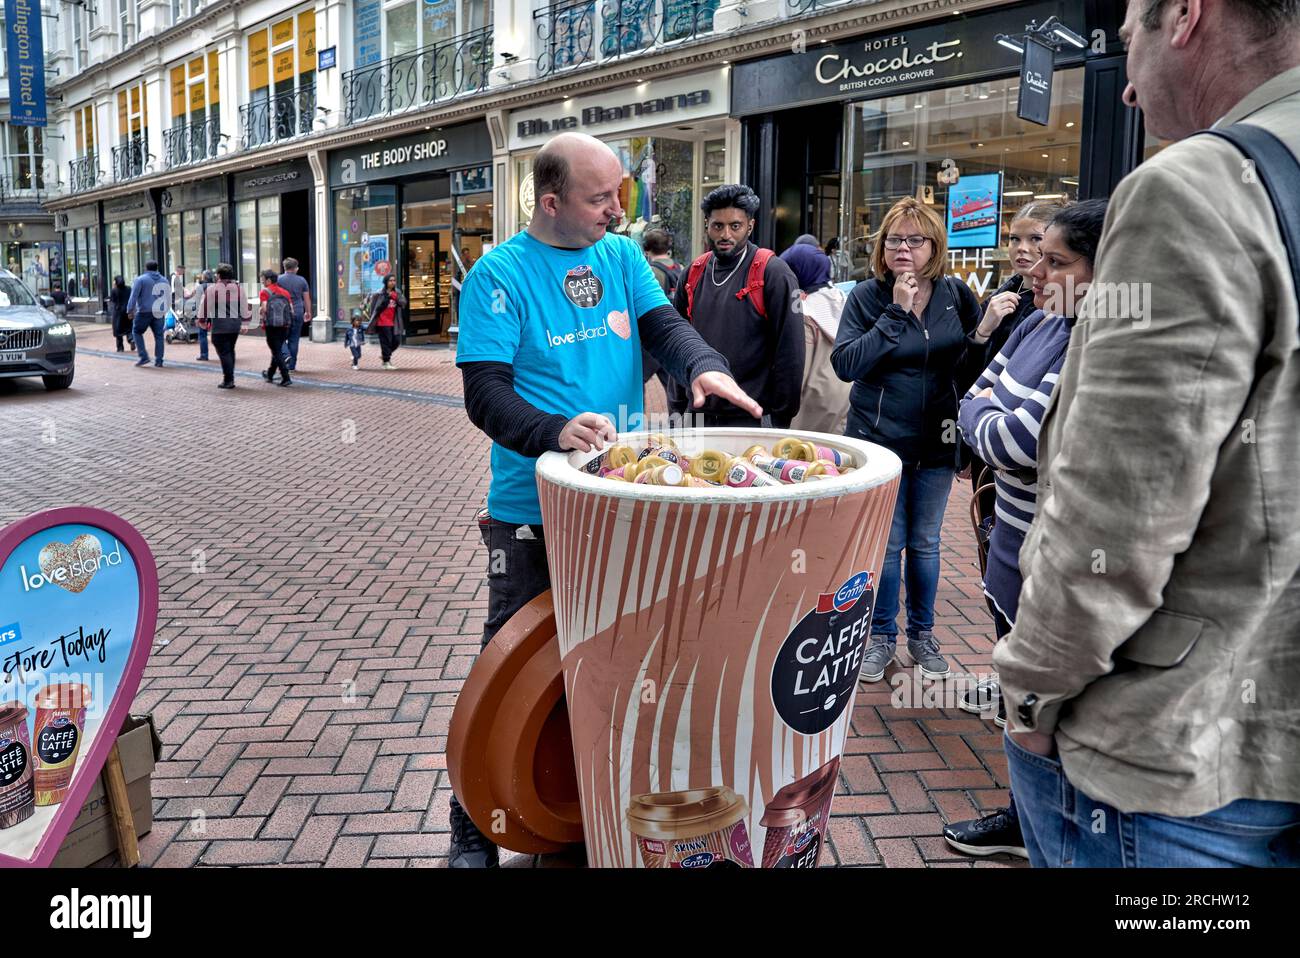 Promozione caffè latte con assaggi gratuiti consegnati ai passanti di New Street, Birmingham, Inghilterra, Regno Unito Foto Stock